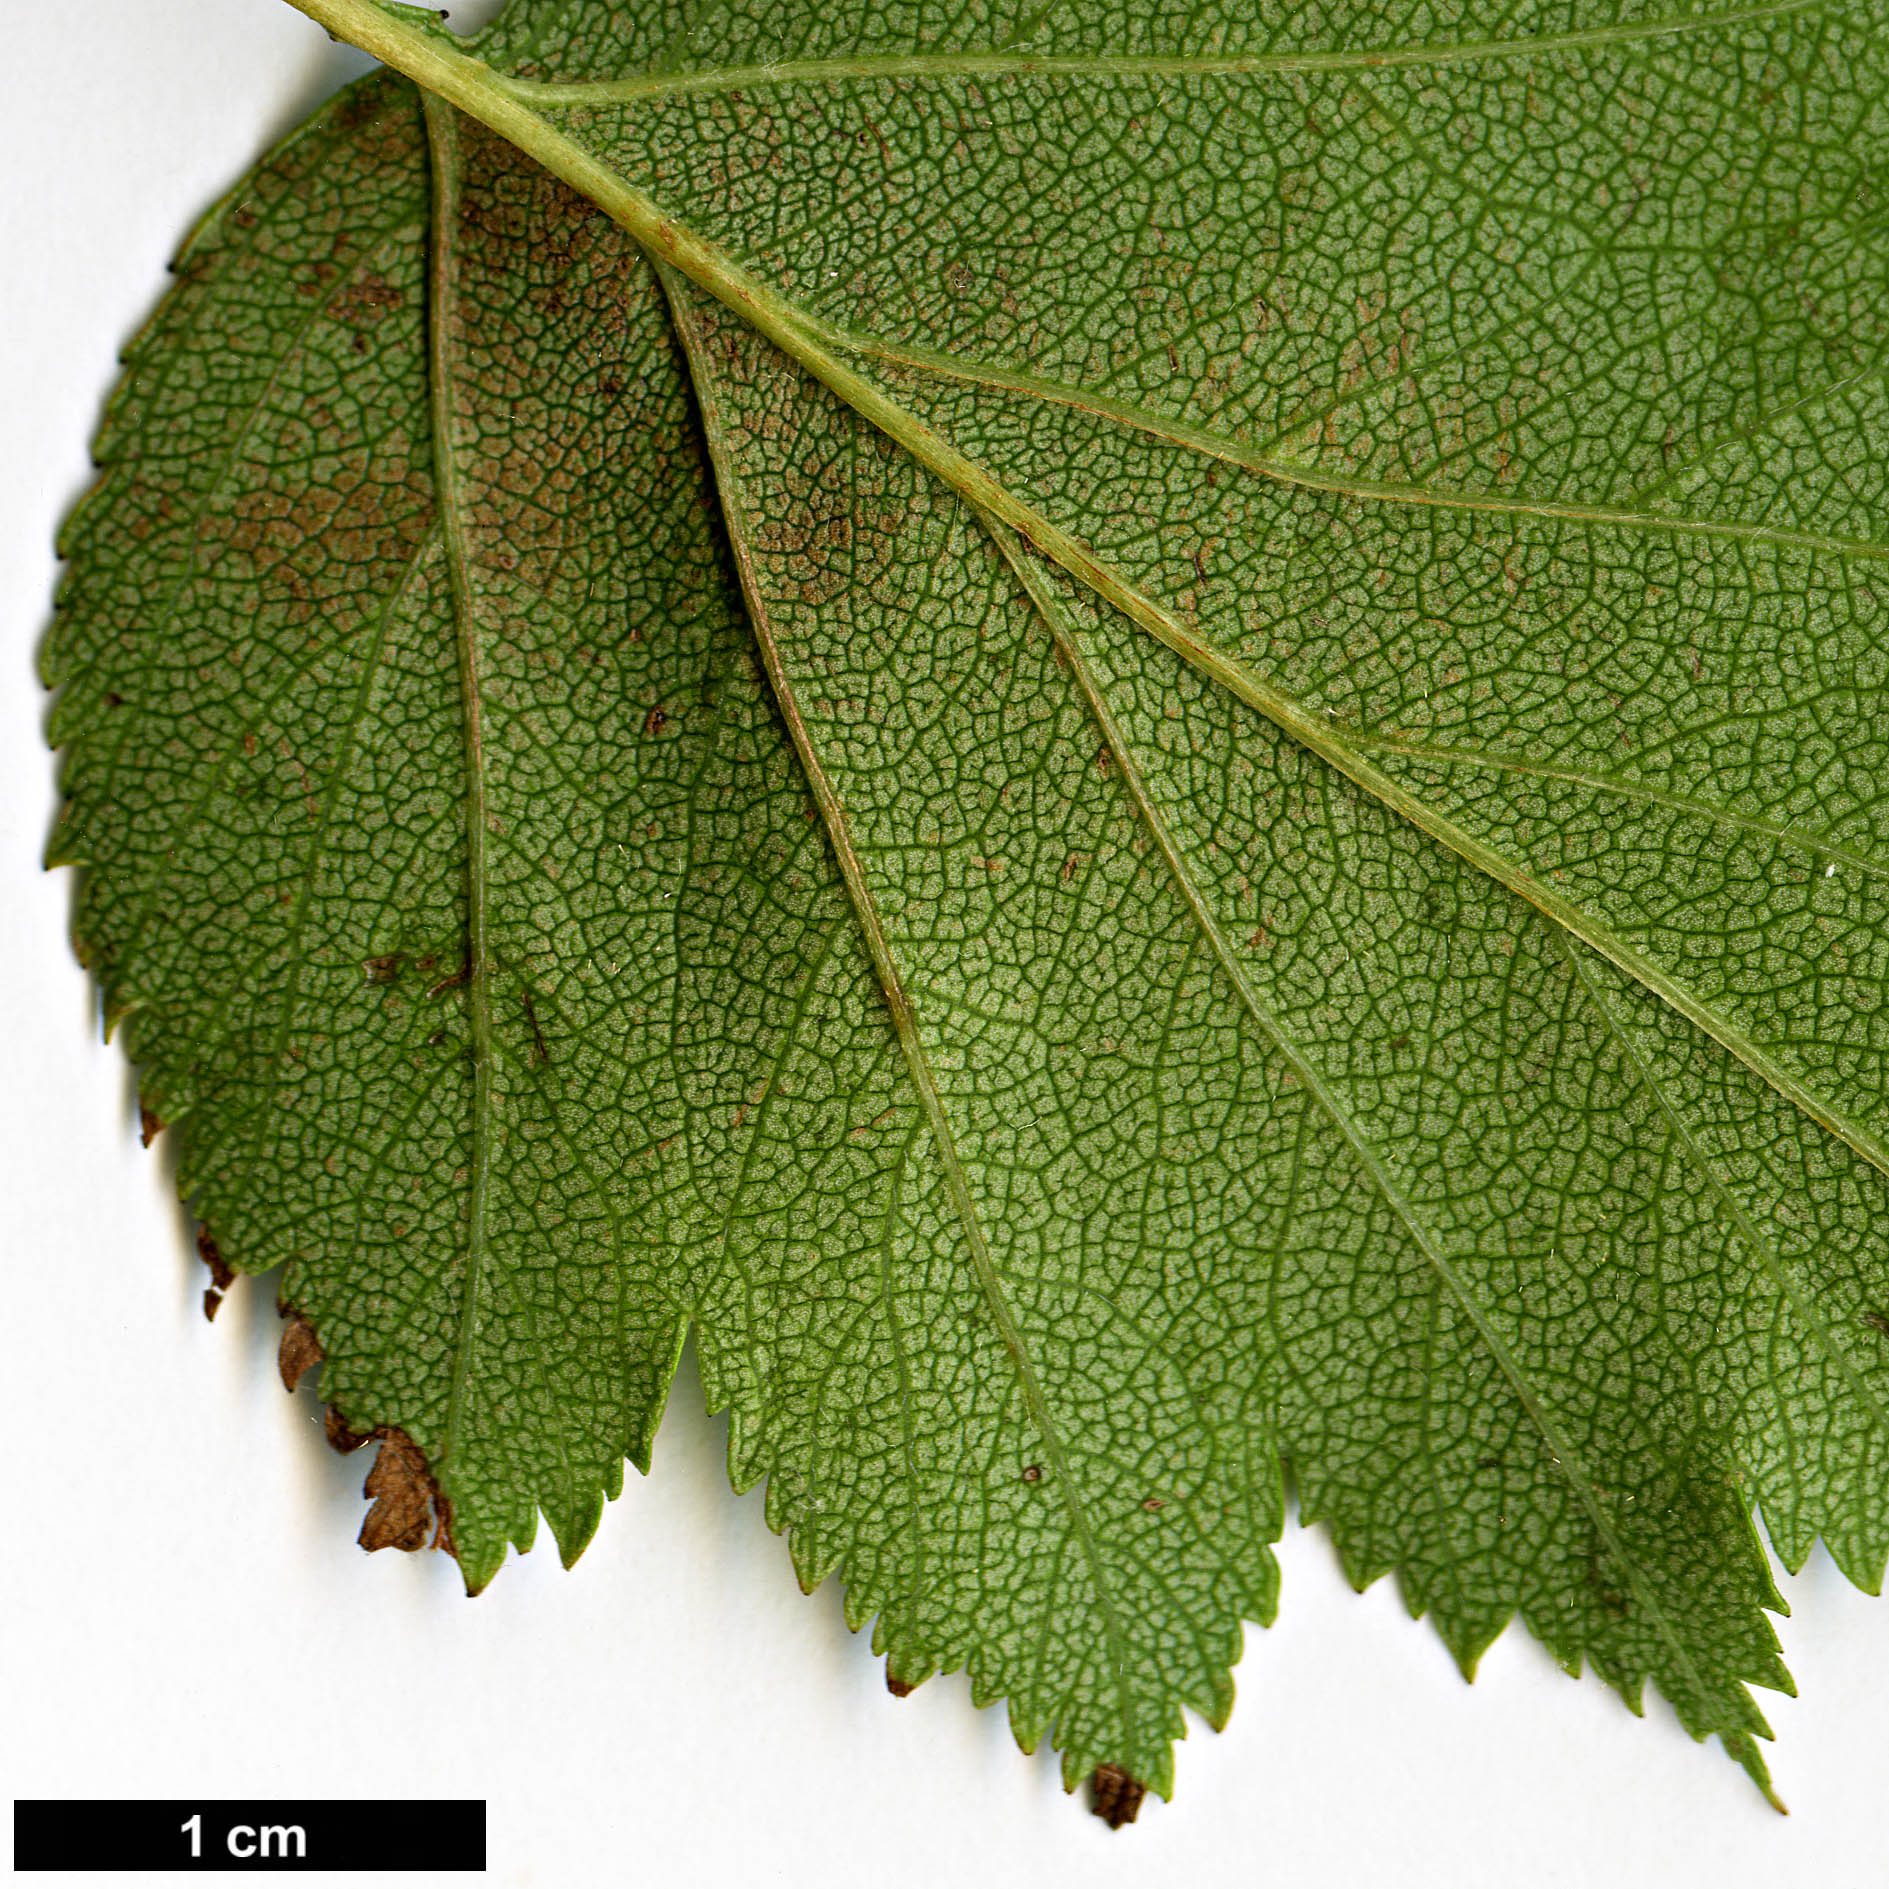 High resolution image: Family: Rosaceae - Genus: Crataegus - Taxon: sanguinea